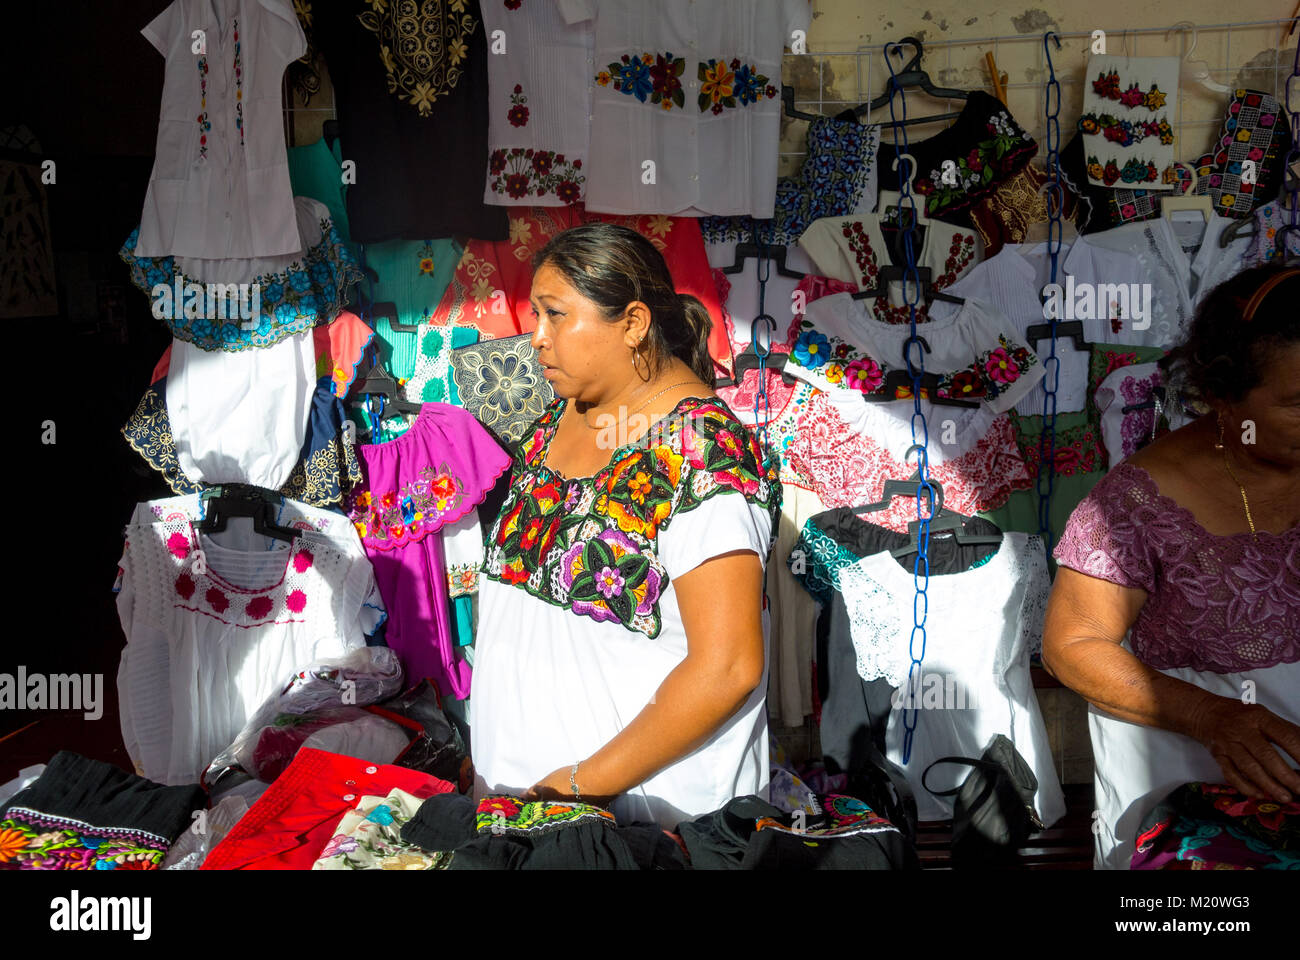 Valladolid, Yucatan, eine indigene Frau aus dem Hupilstamm, die Souvenirs an einem Stand verkauft. Stockfoto